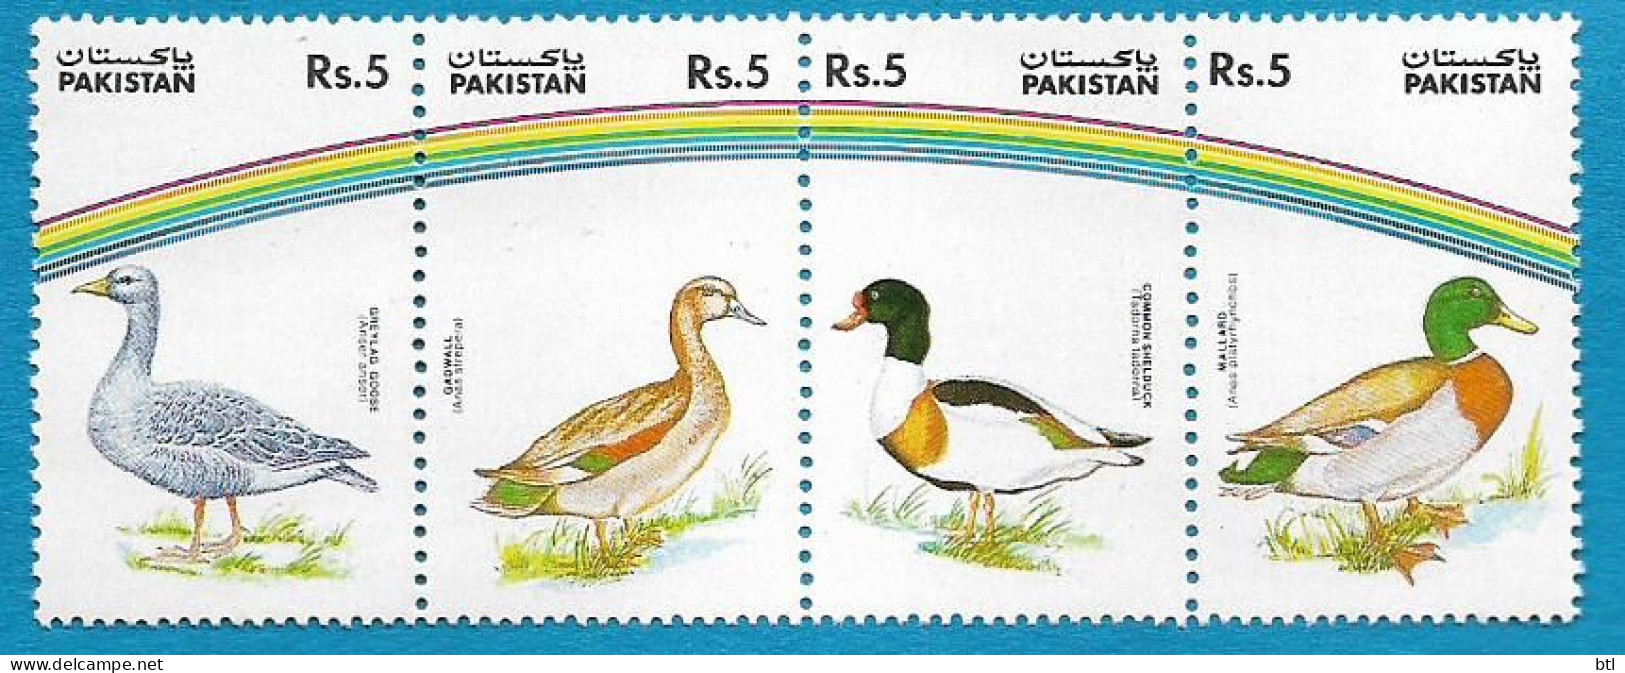 Pakistan : Duck's Of Pakistan - Pakistan